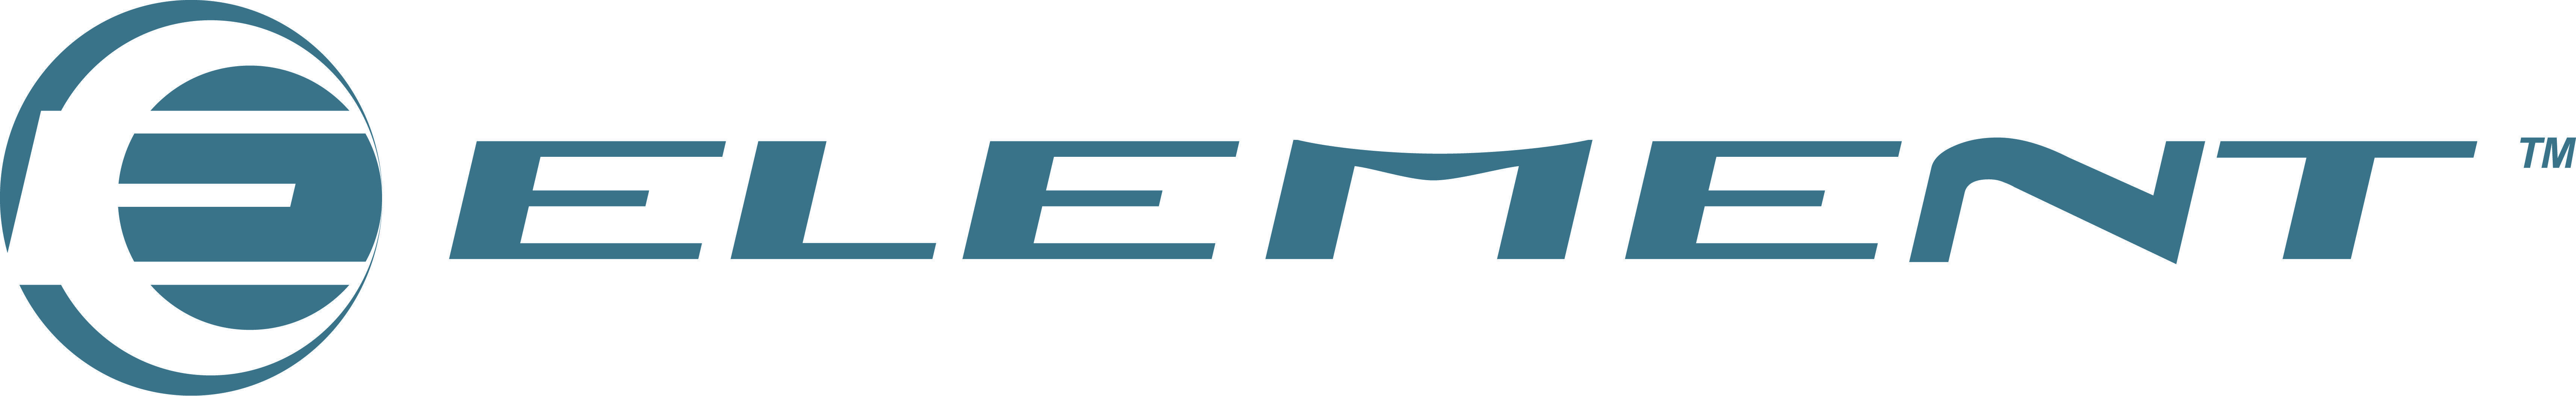 Element Electronics Logo - Introduction